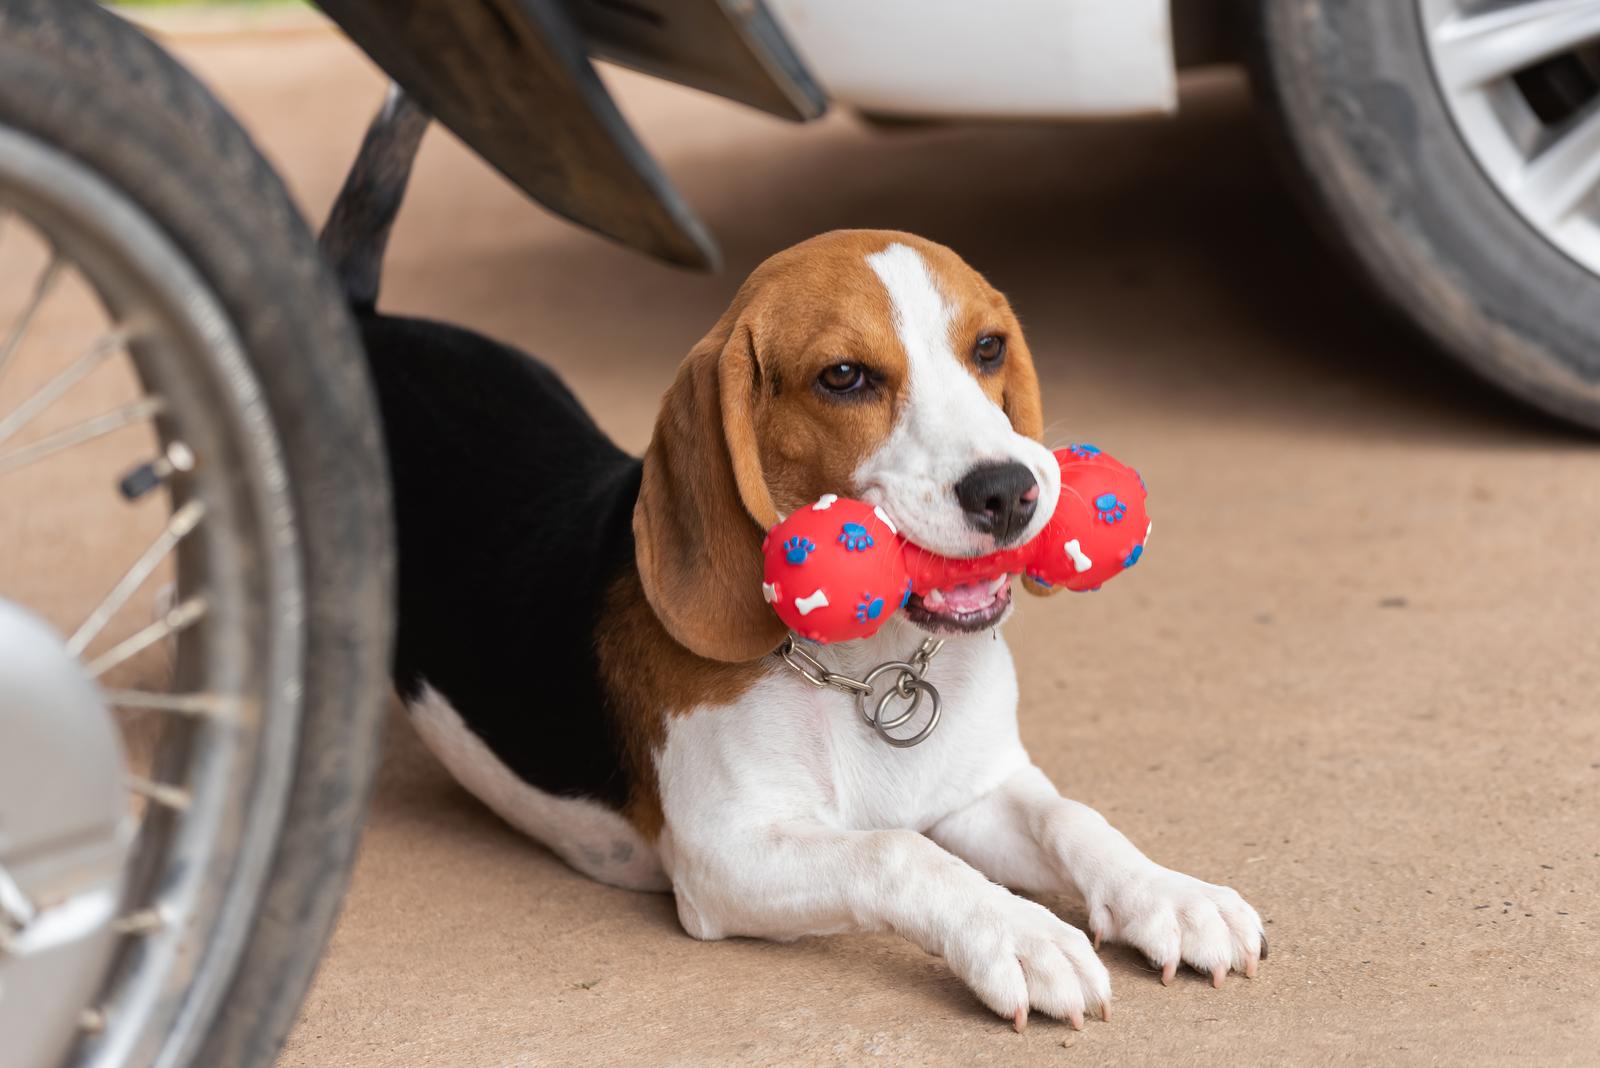 Beagle adopcja - jak się przygotować